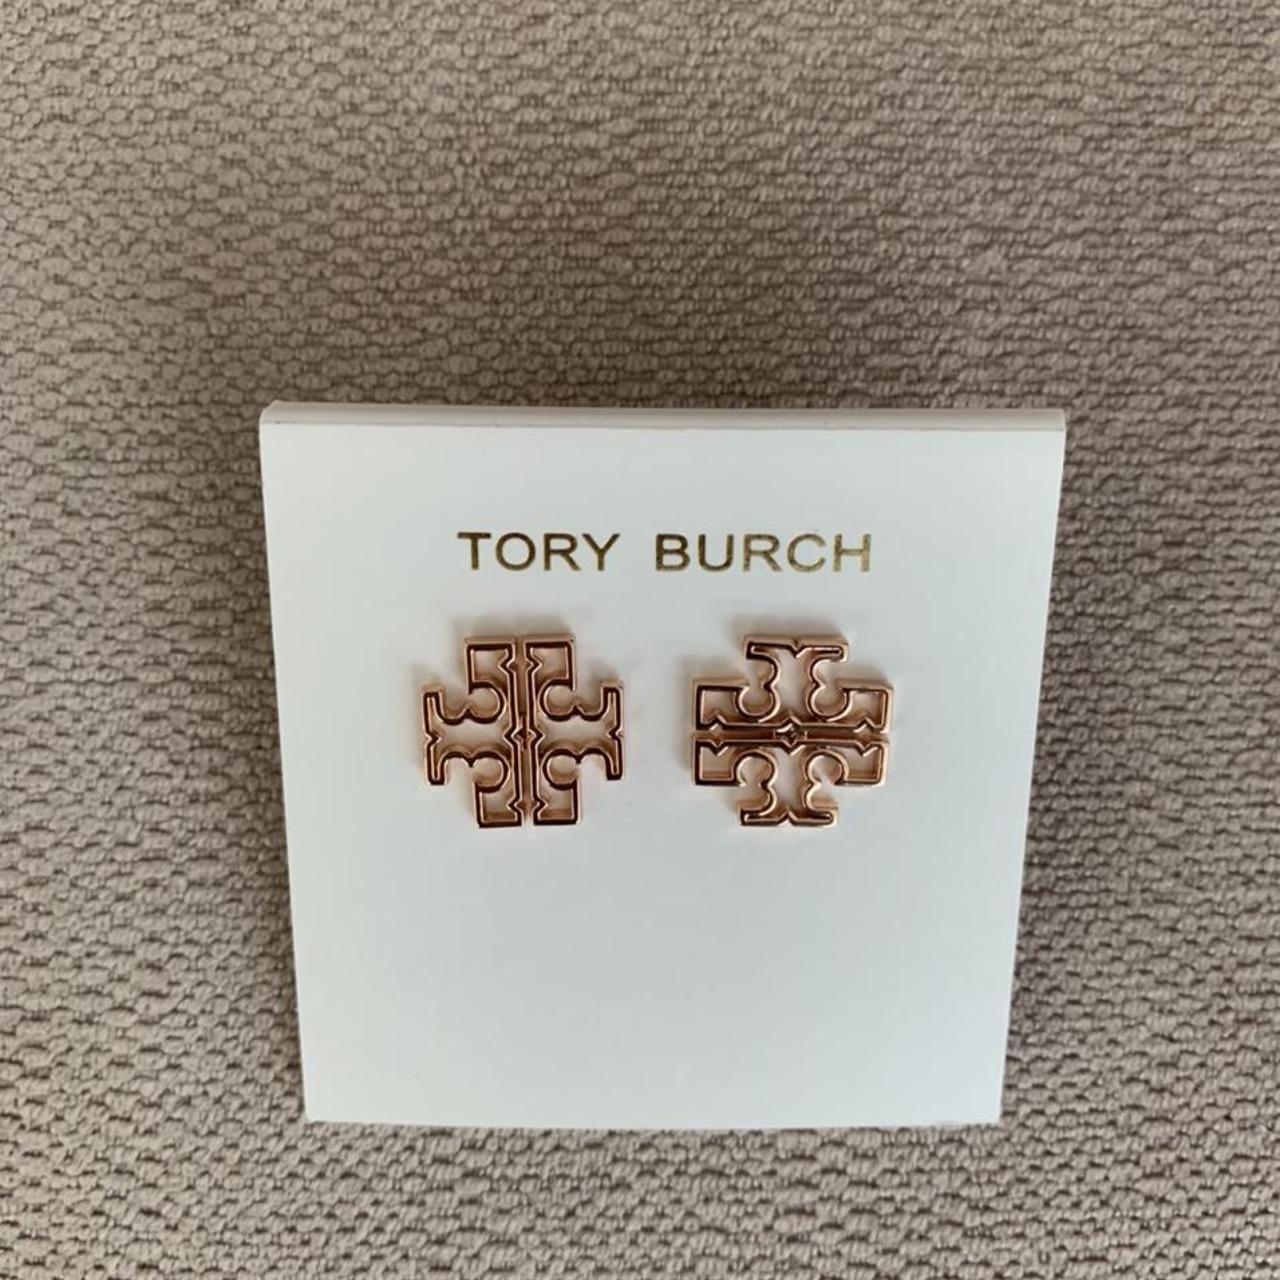 Tory Burch large Britten logo stud earrings in rose... - Depop